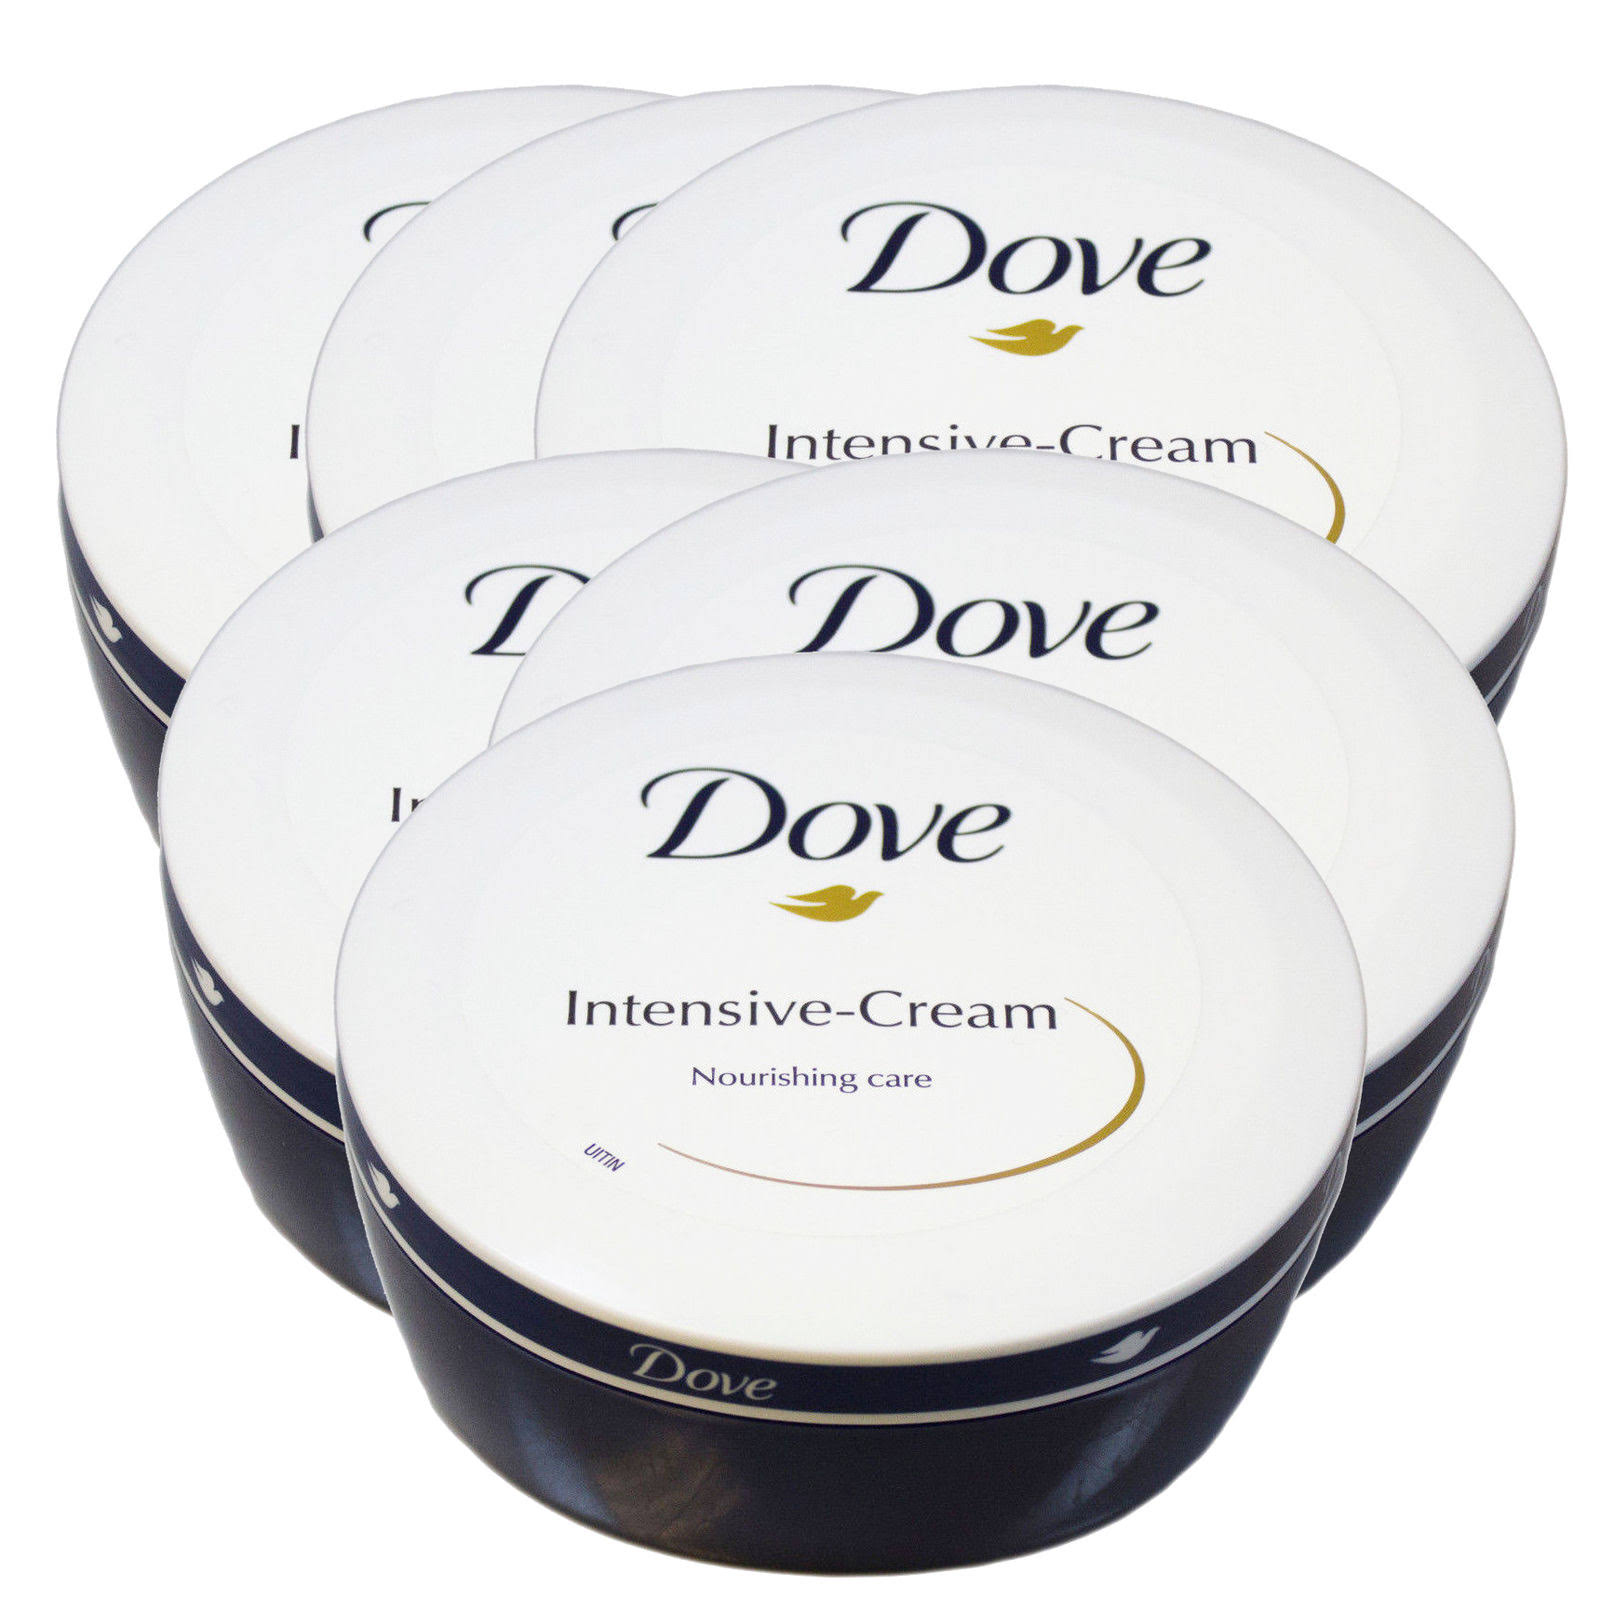 Dove Intensive Cream - Nourishing Care 5.07 oz